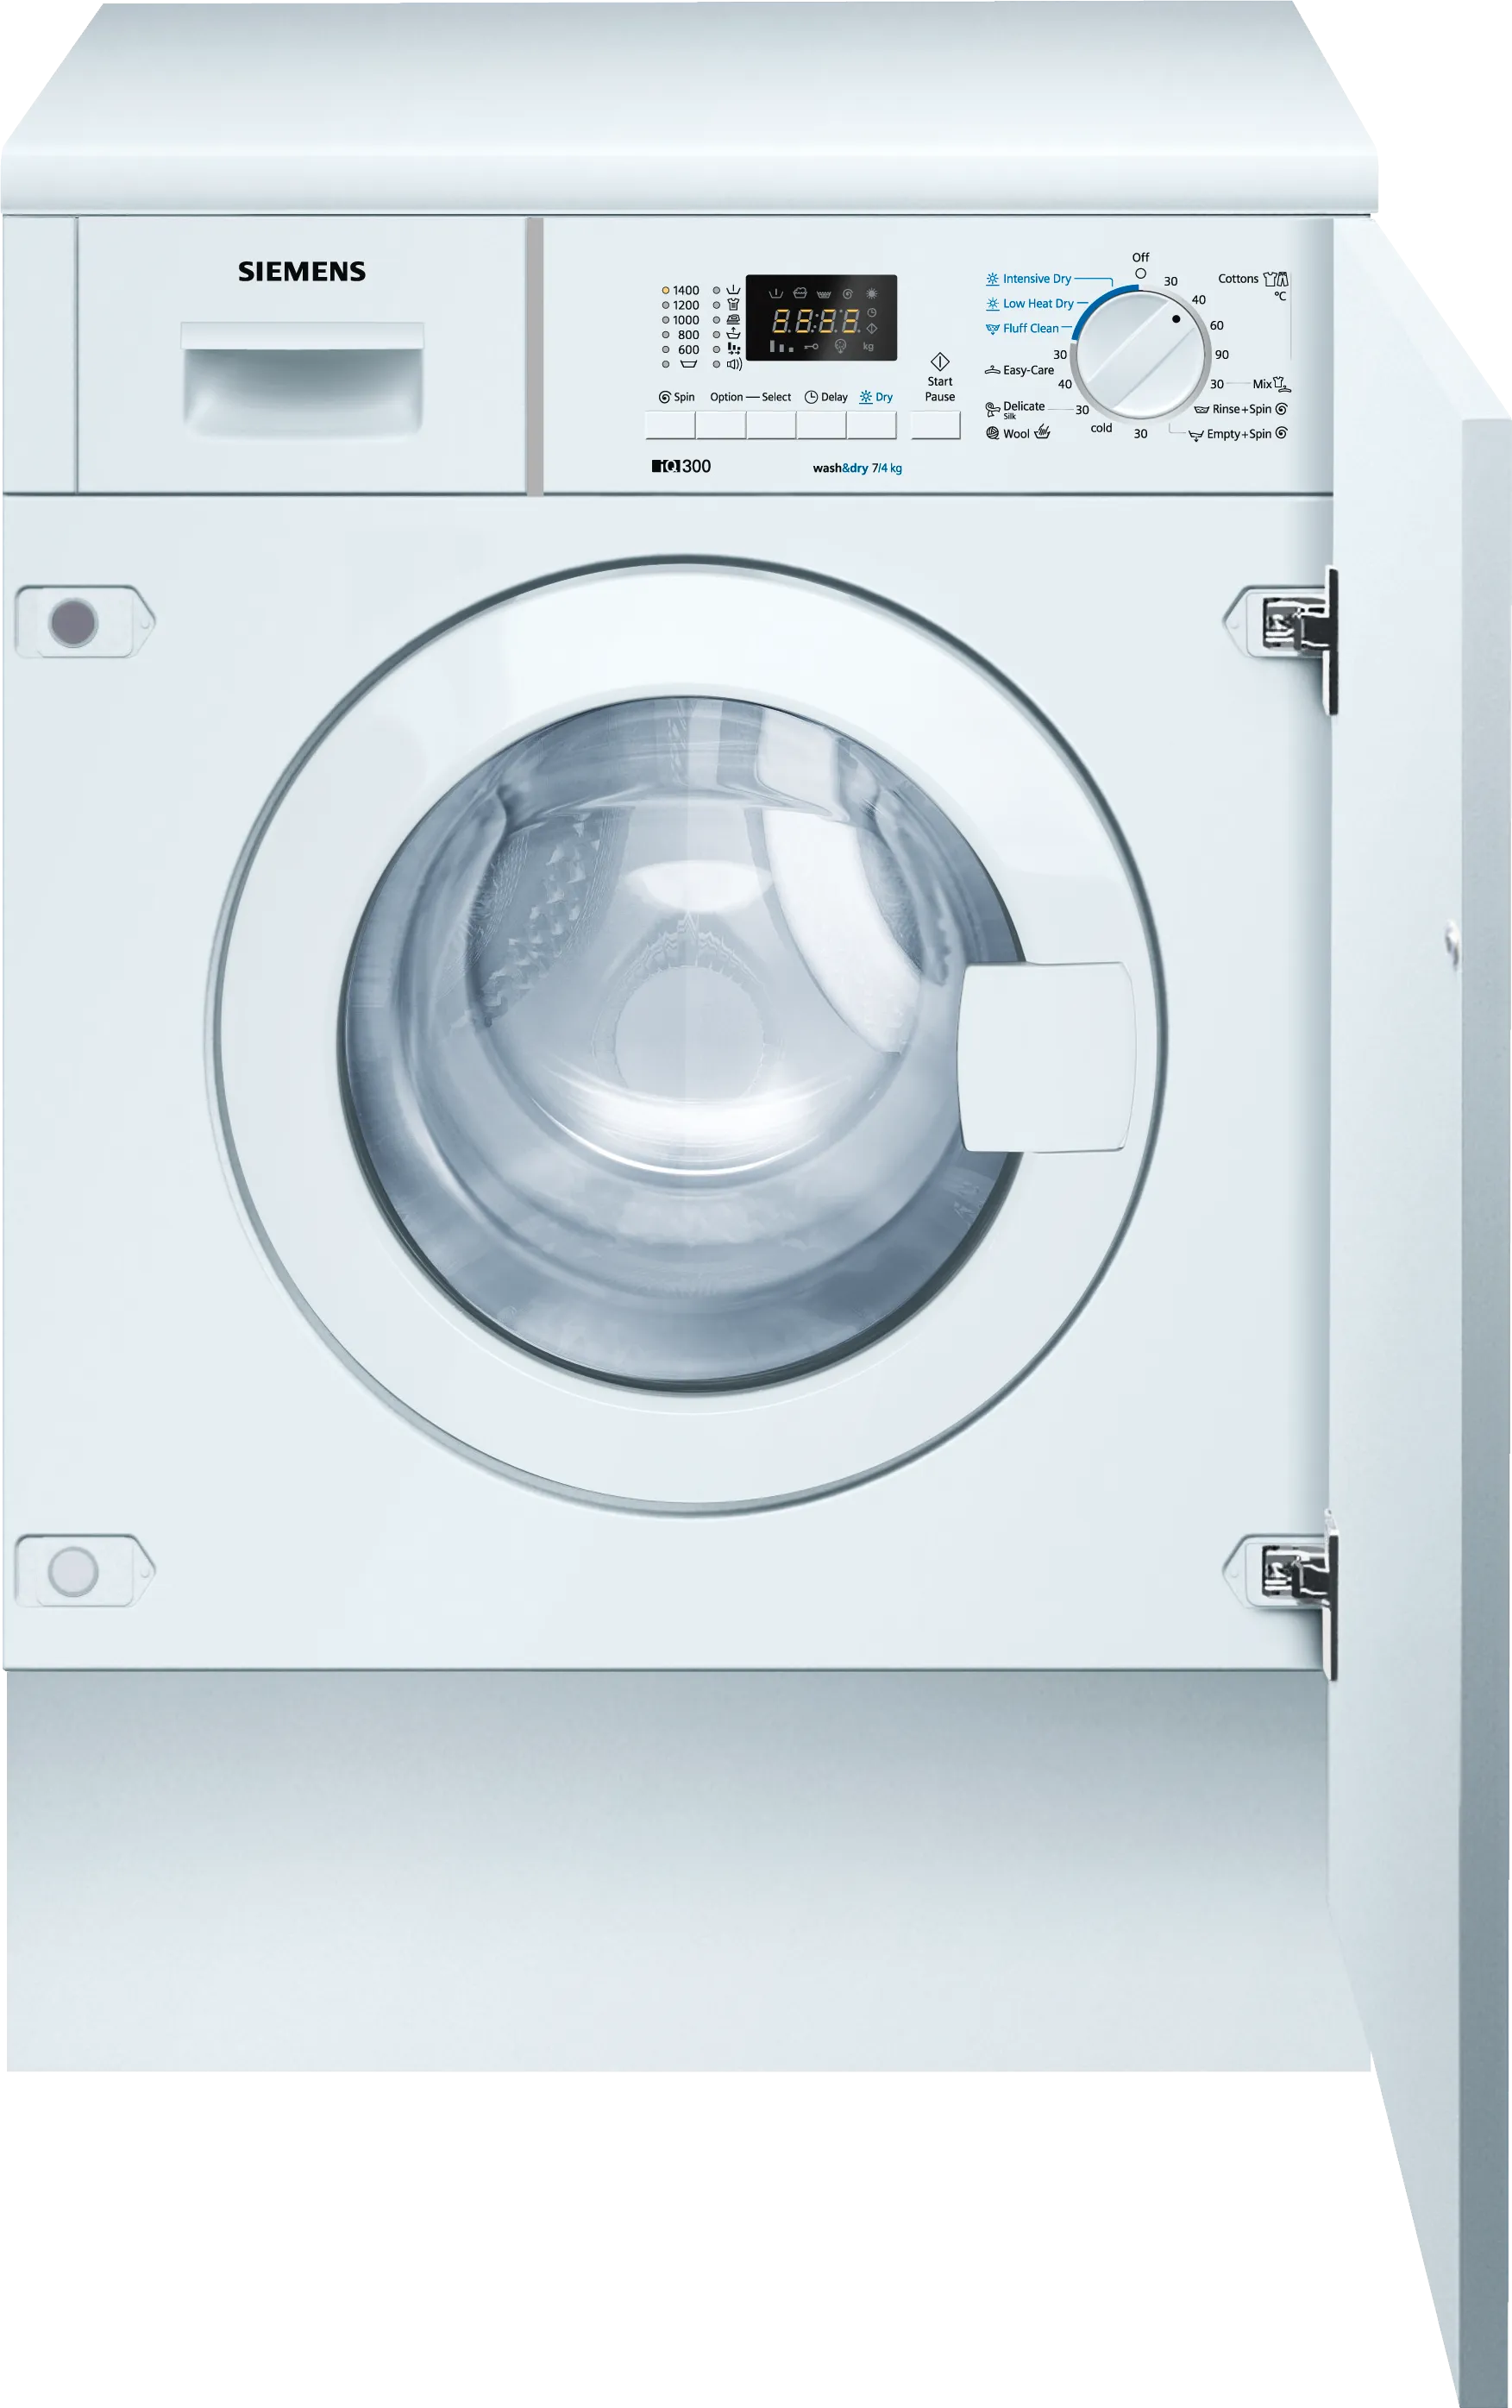 iQ300 washer dryer 7/4 kg 1400 rpm 